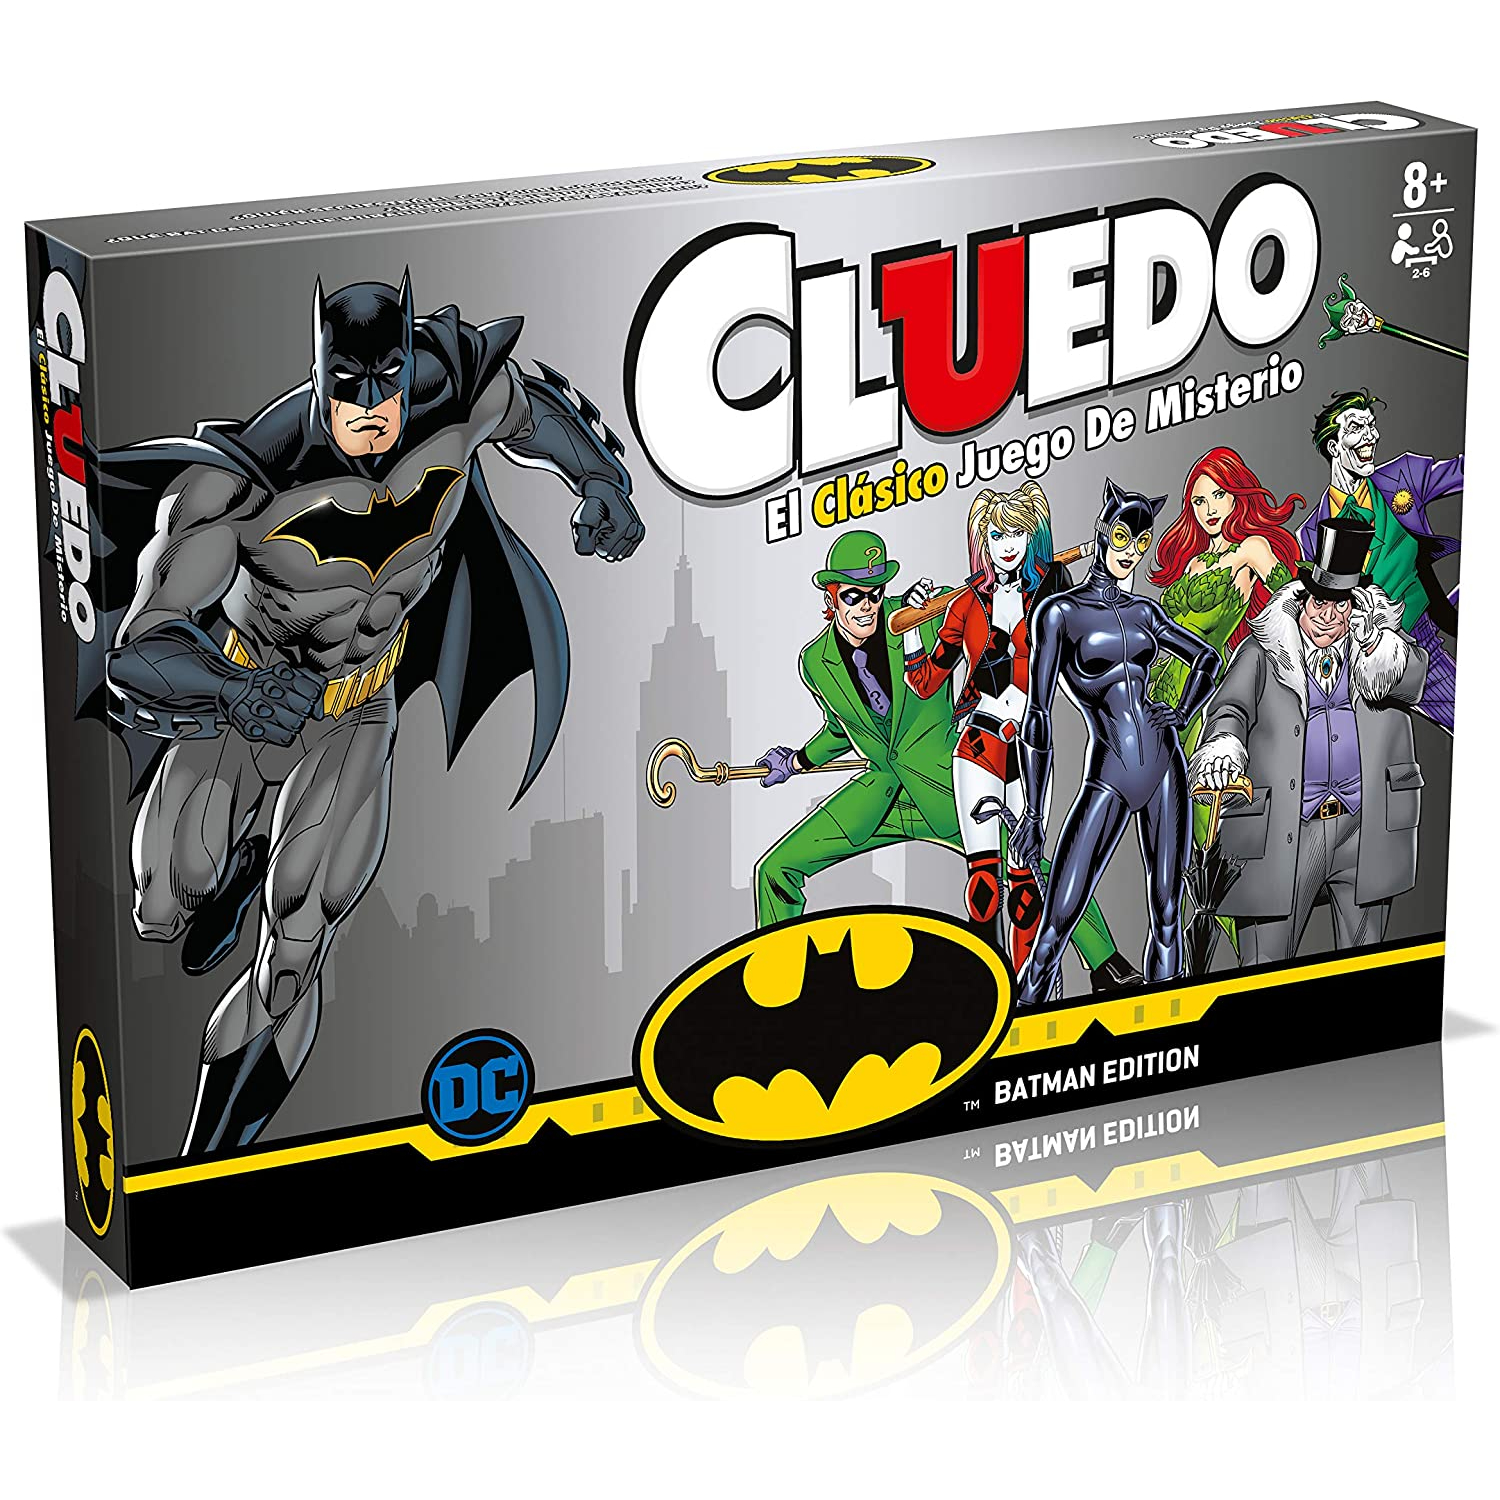 სამაგიდო თამაში ქლუედო ჰარი პოტერ - Cluedo Batman Edition